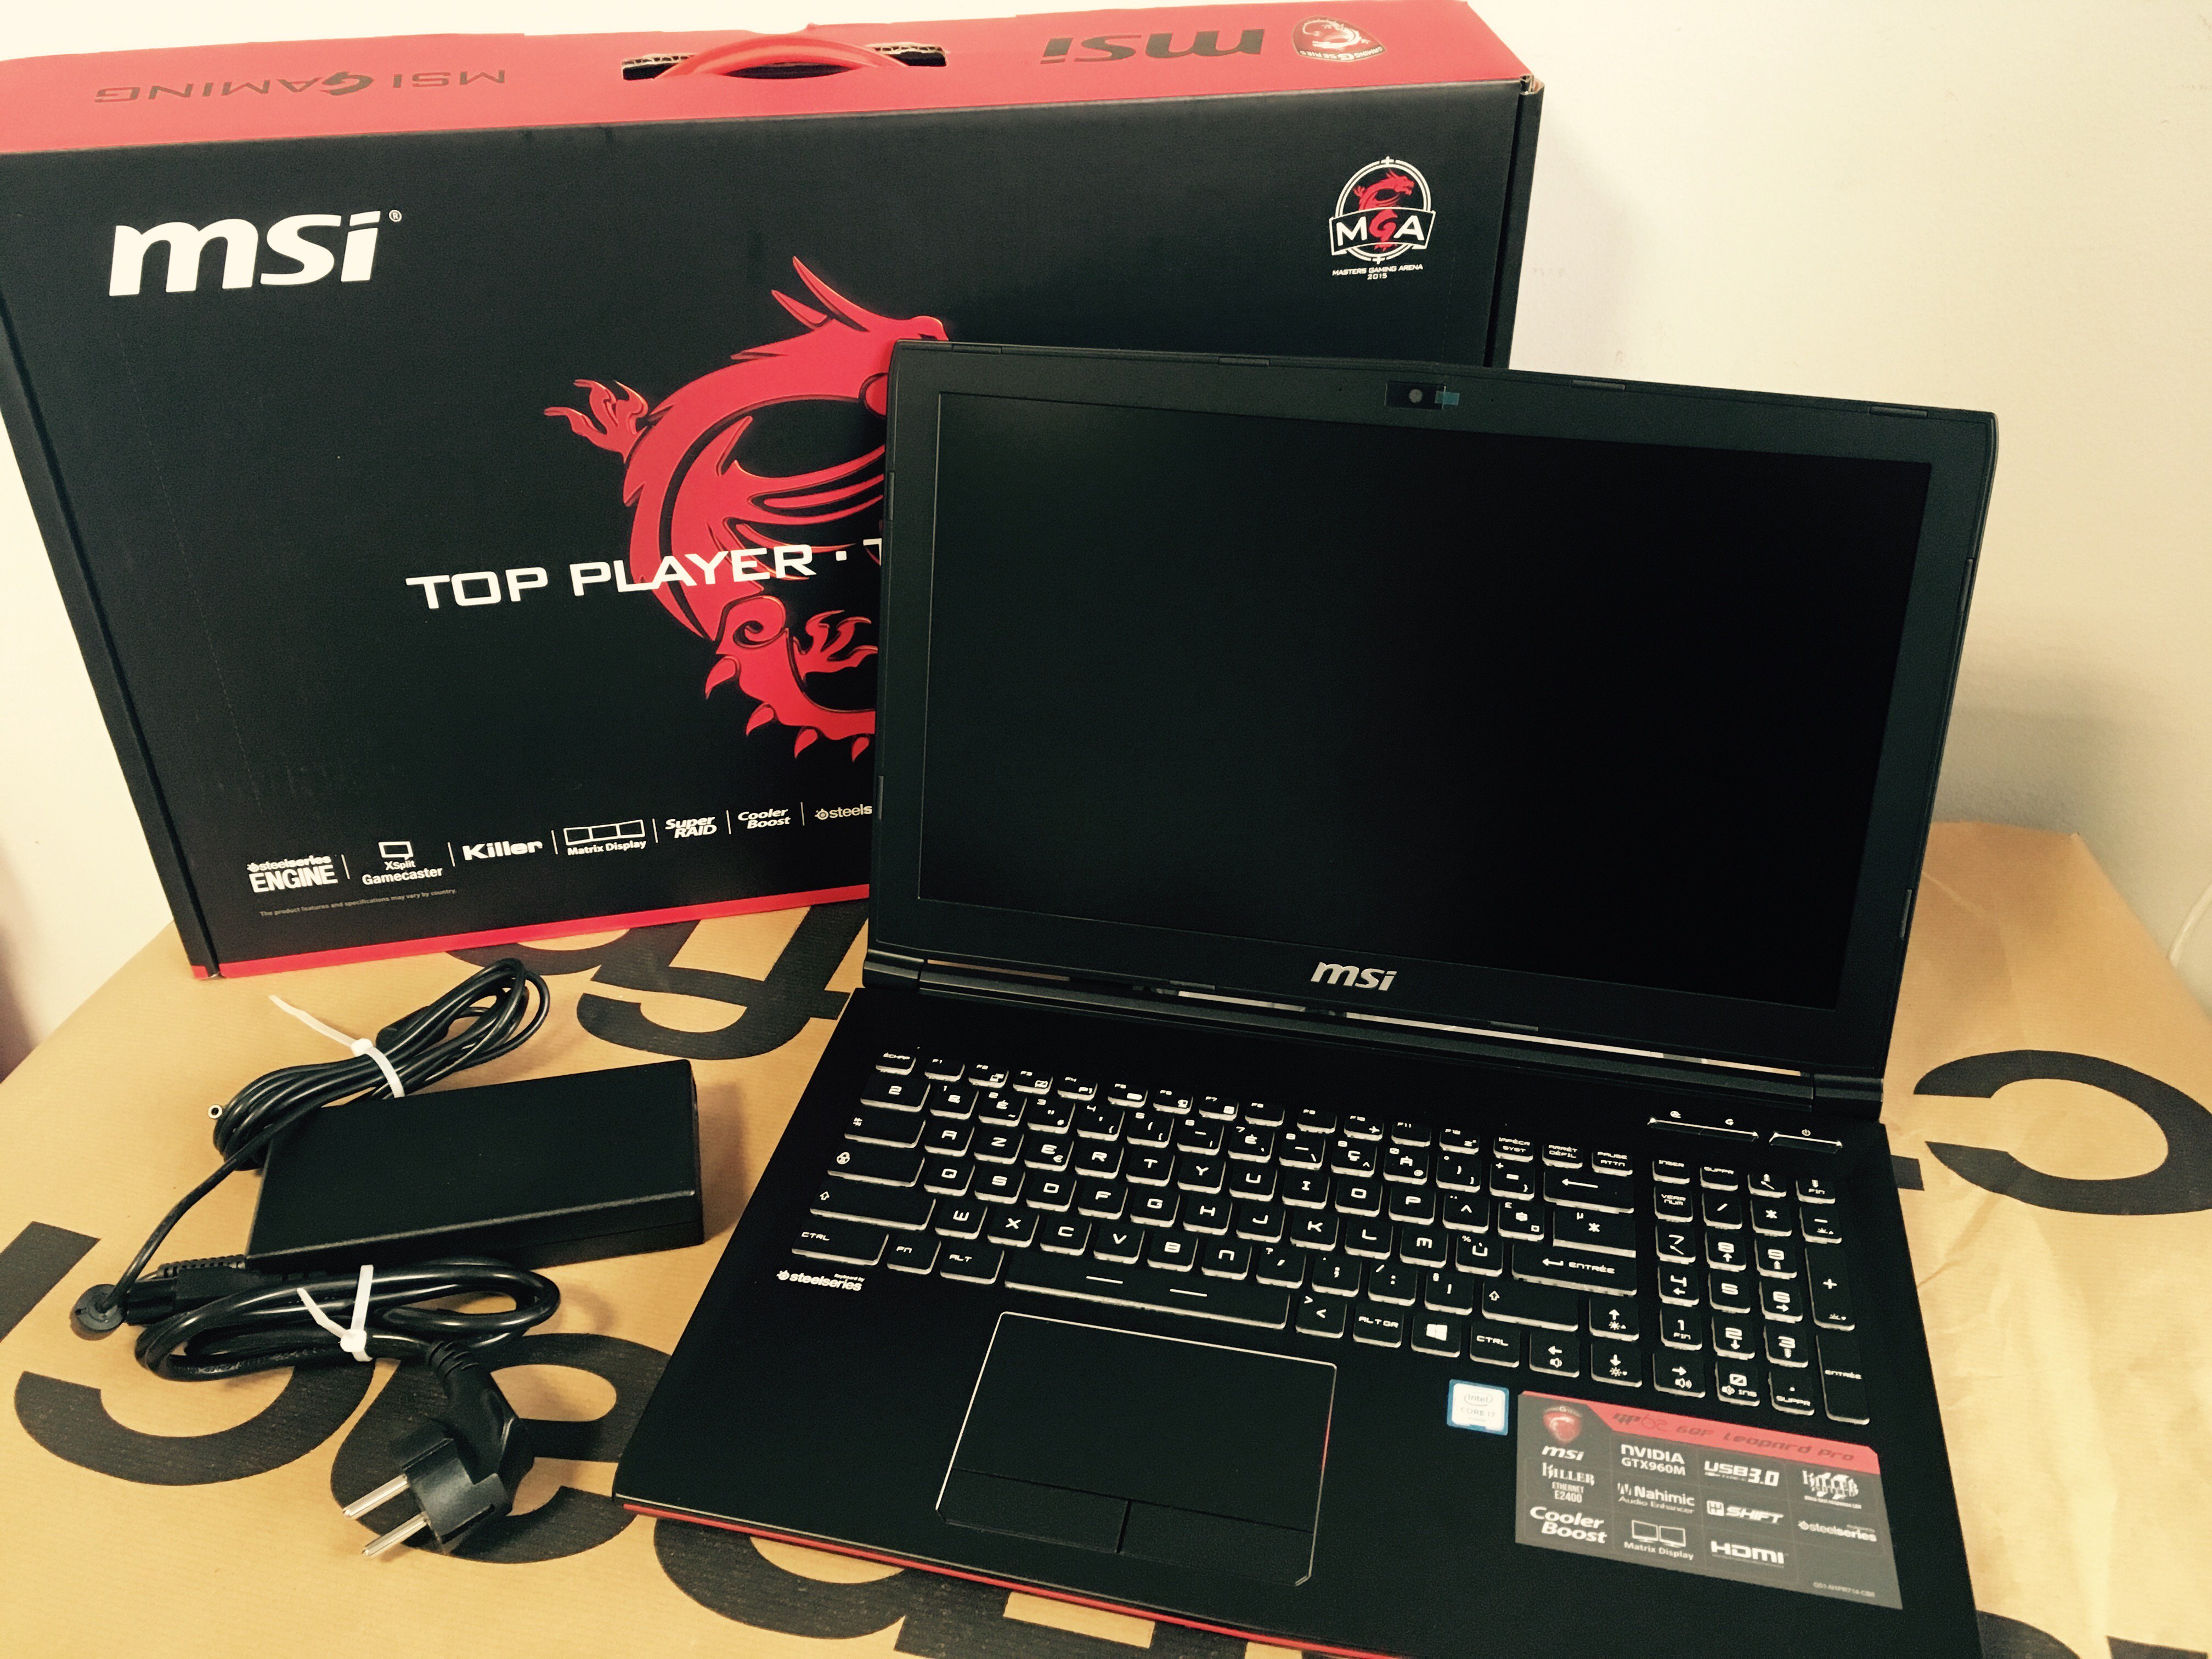 Fnac on X: "Bon Plan: Le PC Portable Gaming MSI GP62 Leopard Pro 6QF-1453FR  15.6" d'occasion est à 785,90€ au lieu de 1199,49€ https://t.co/EM5u4vw5gy  https://t.co/FdrlZTyh4Z" / X